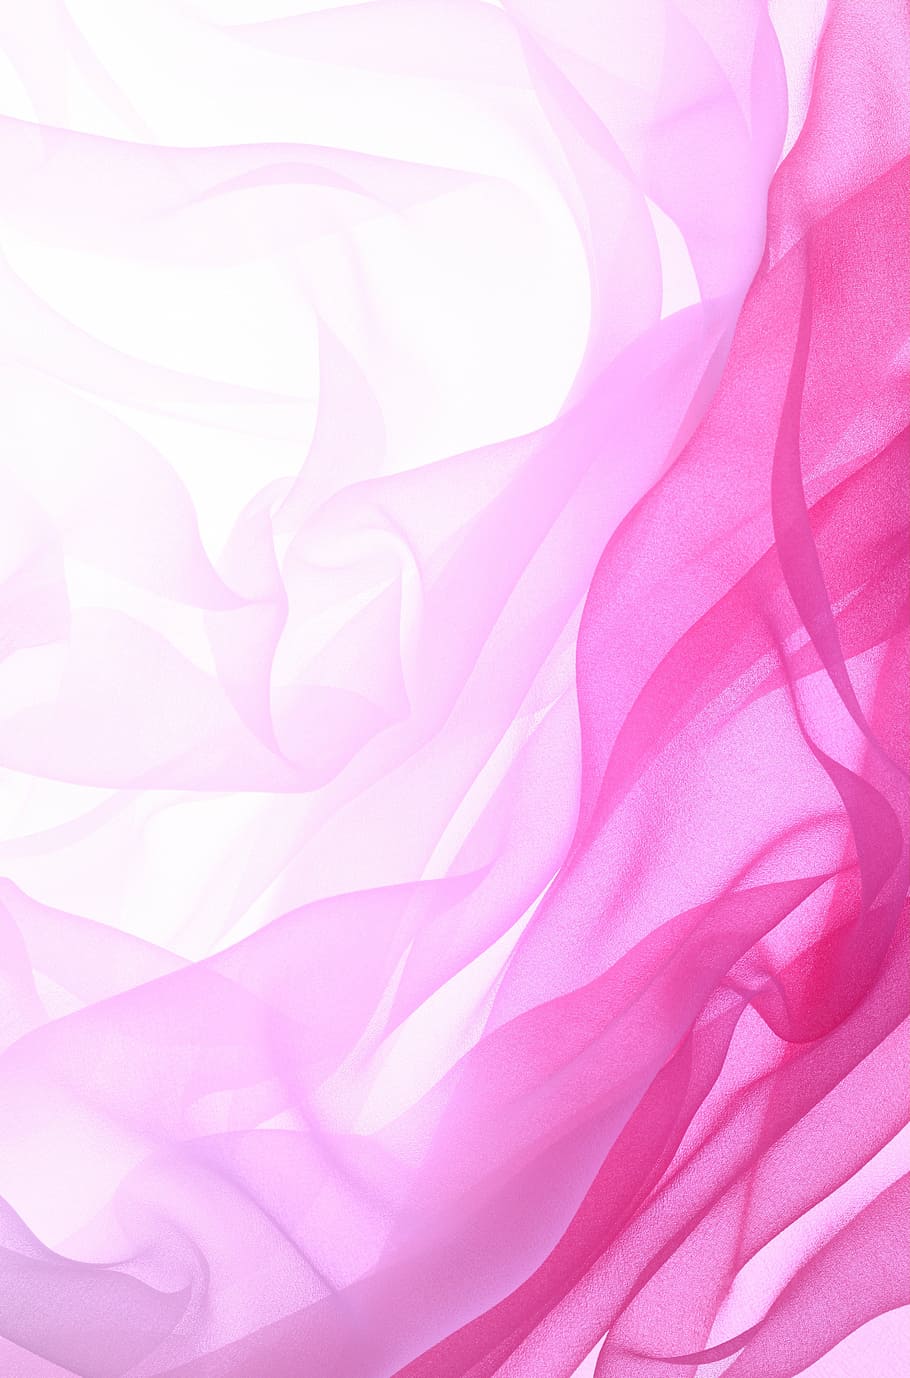 textil rosa, material, tinta, concepción artística, tul, degradado, rosa, abstracto, fondos, patrón